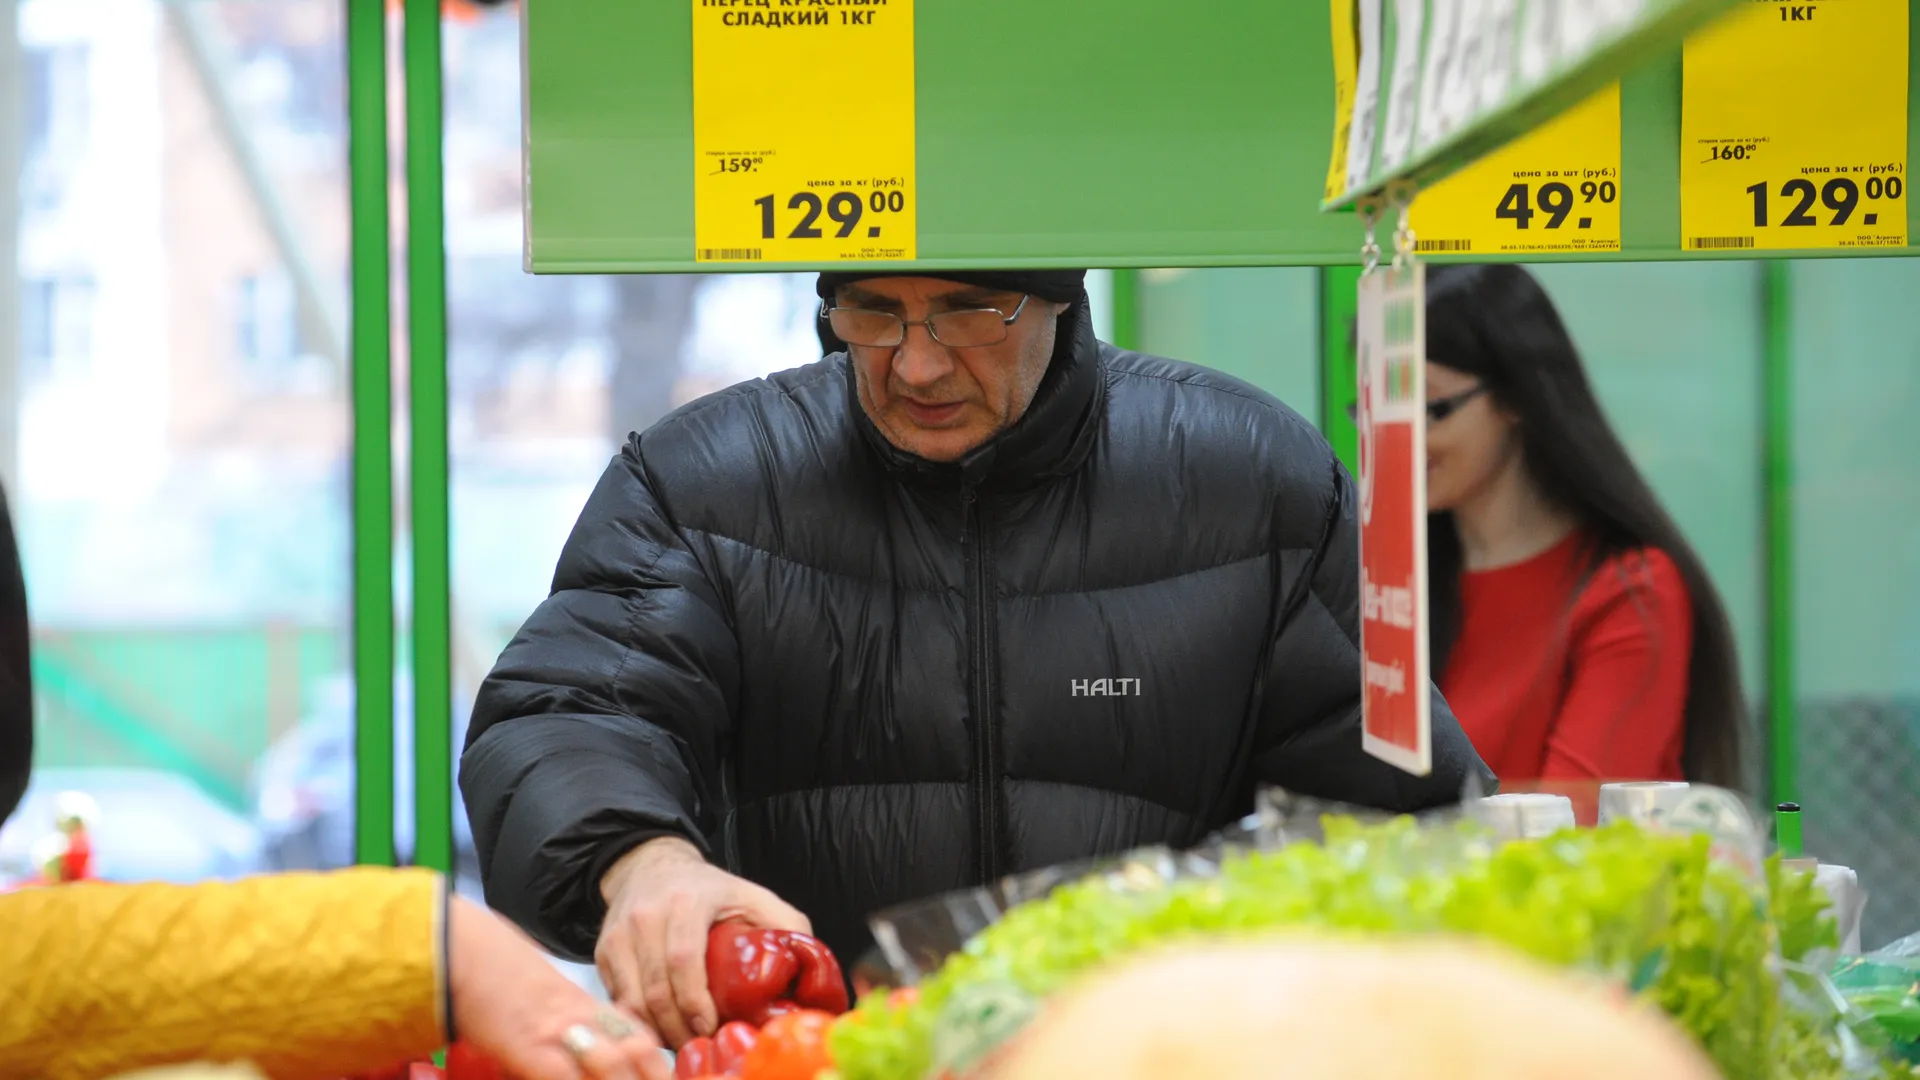 Москвич купил по скидке водку и лимонад, достав гранату в супермаркете